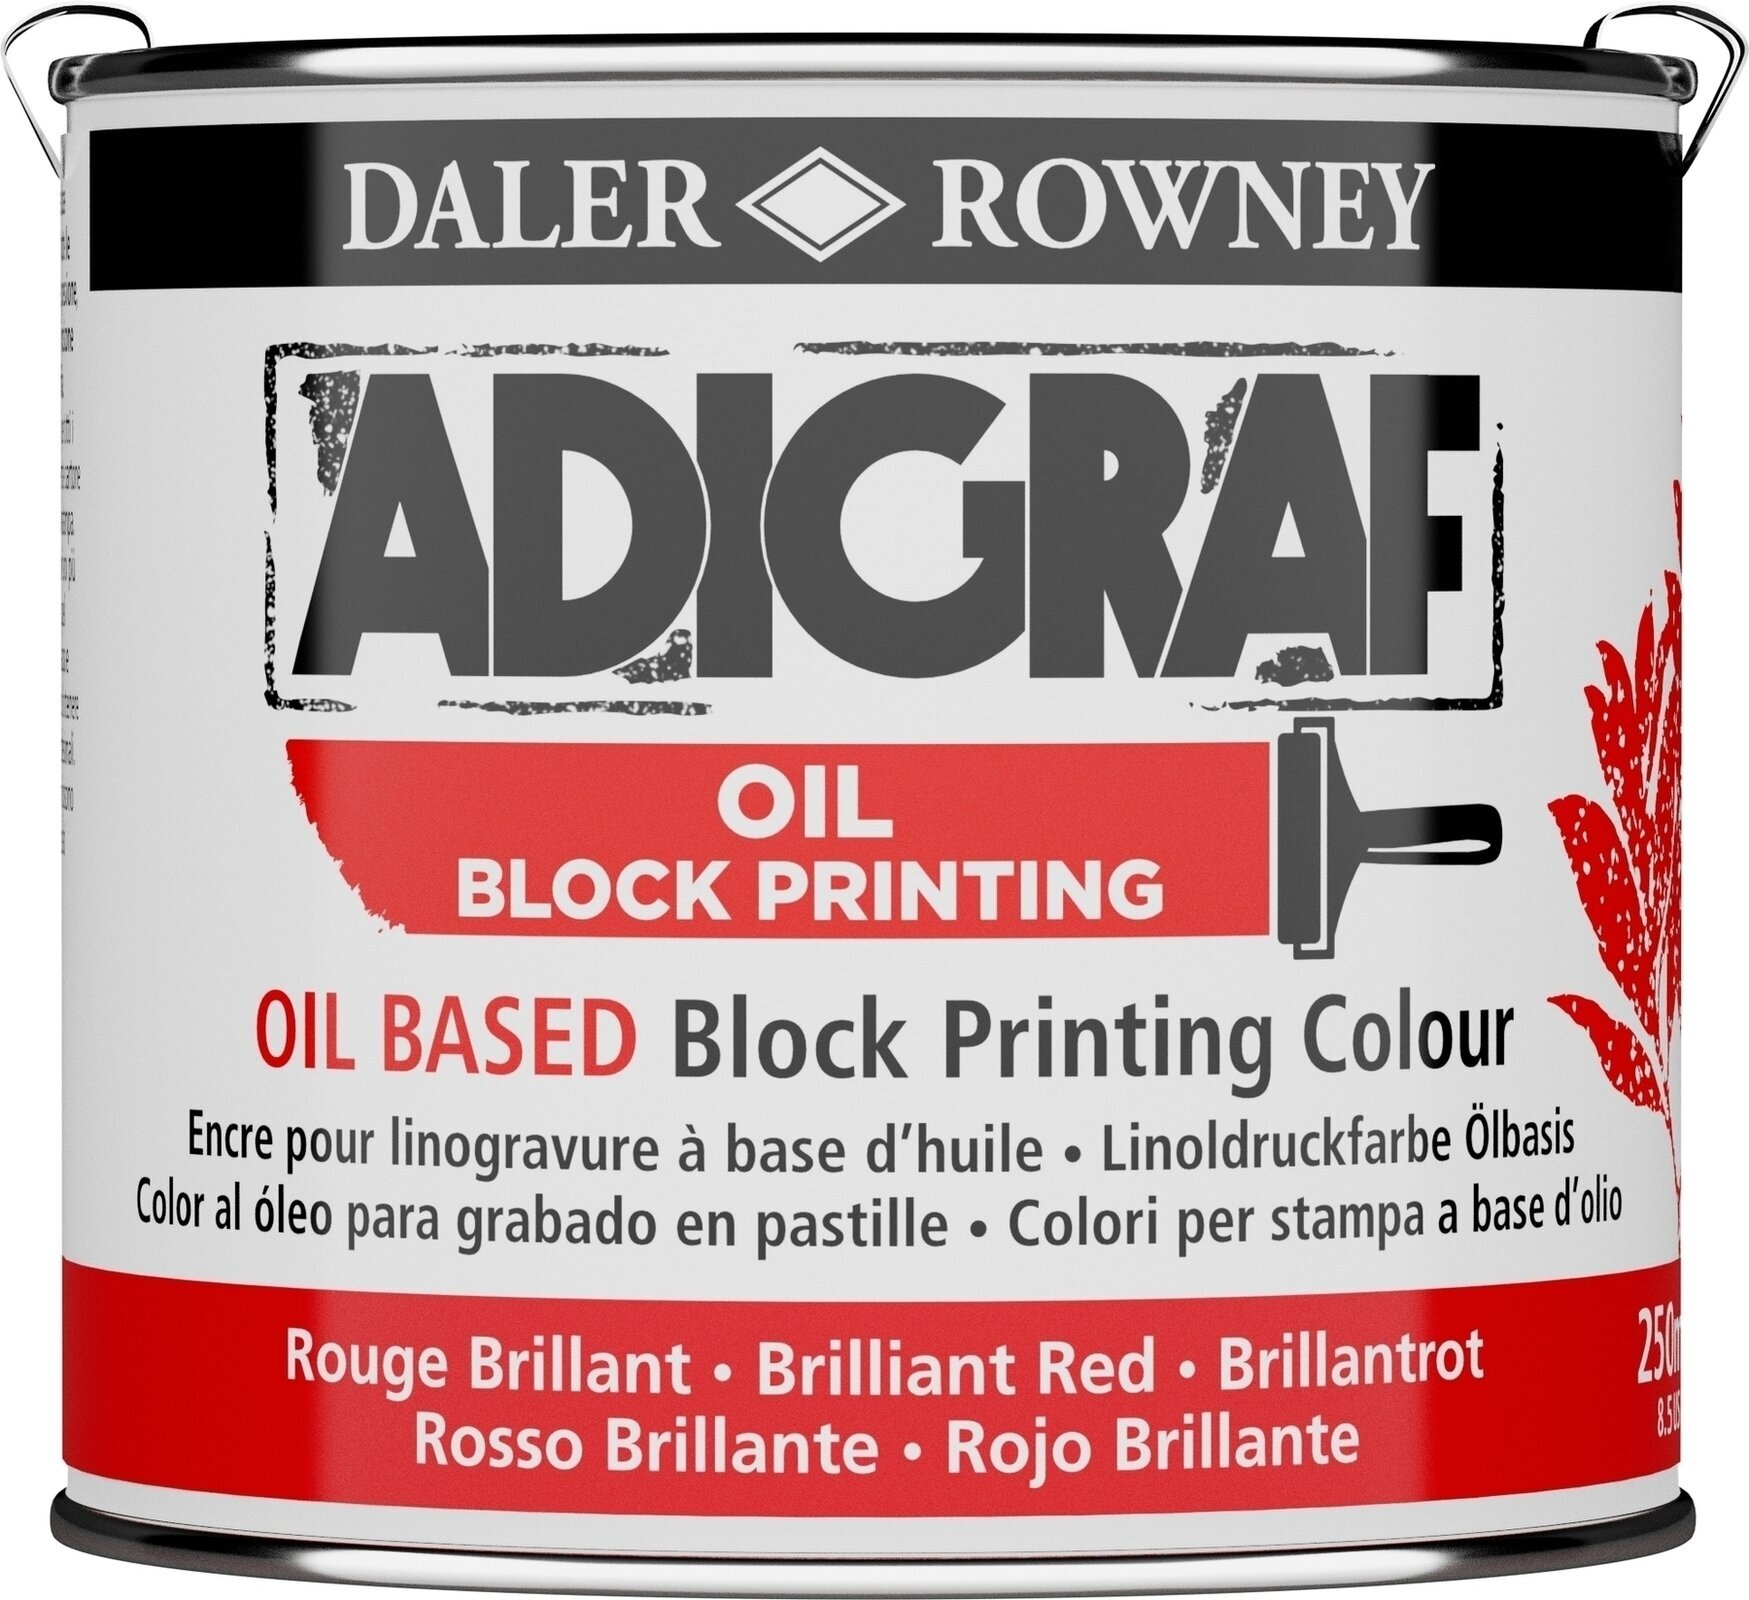 Χρώμα για λινογραφία Daler Rowney Adigraf Block Printing Oil Χρώμα για λινογραφία Brilliant Red 250 εκατ.